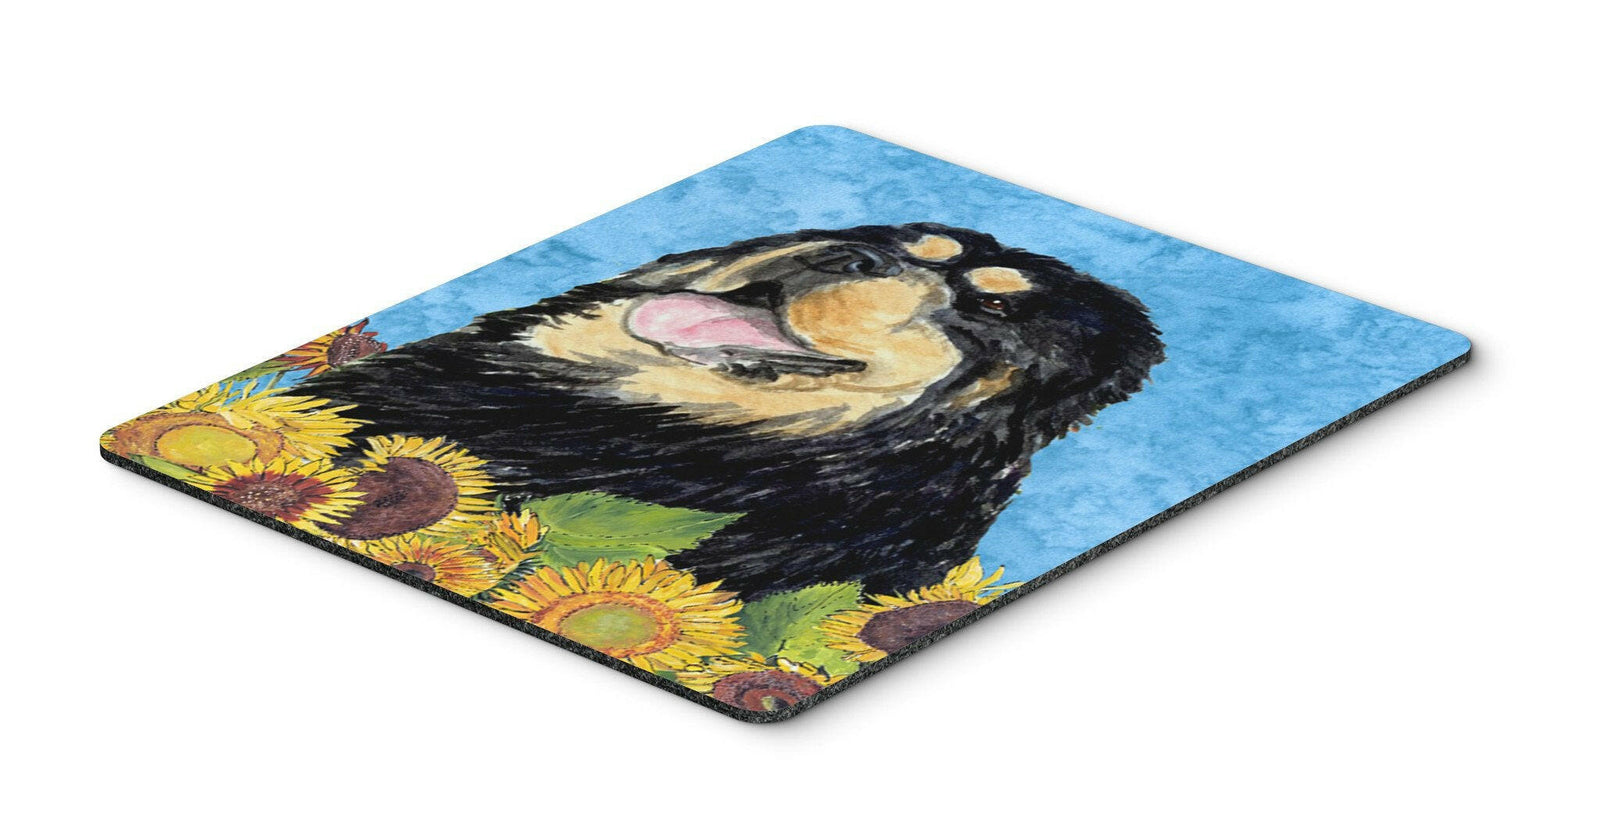 Tibetan Mastiff Mouse Pad, Hot Pad or Trivet by Caroline's Treasures